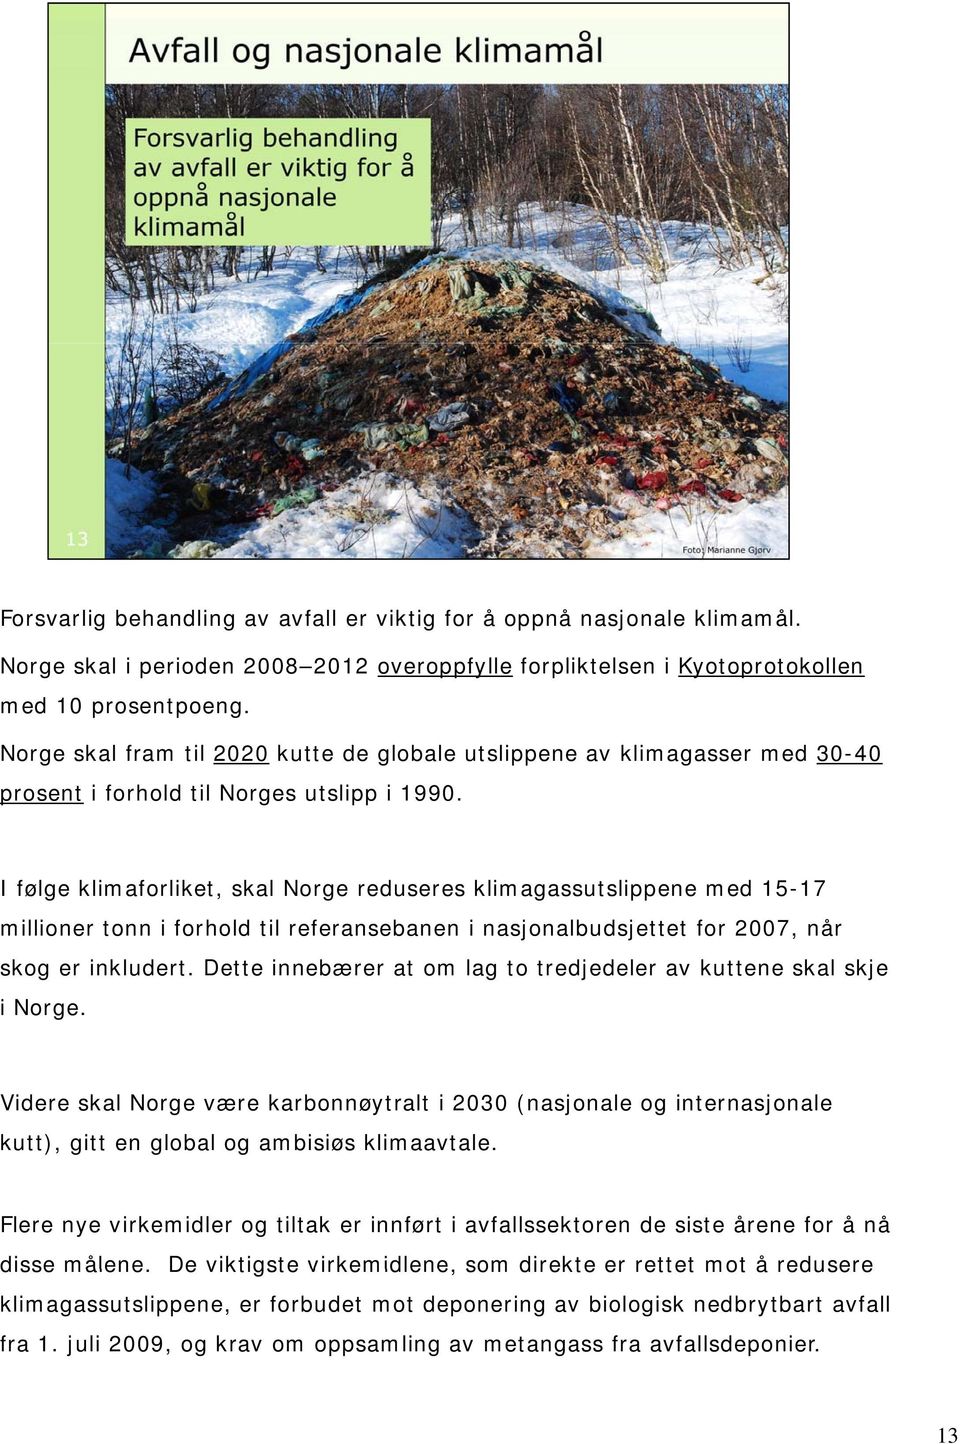 I følge klimaforliket, skal Norge reduseres klimagassutslippene med 15-17 millioner tonn i forhold til referansebanen i nasjonalbudsjettet for 2007, når skog er inkludert.